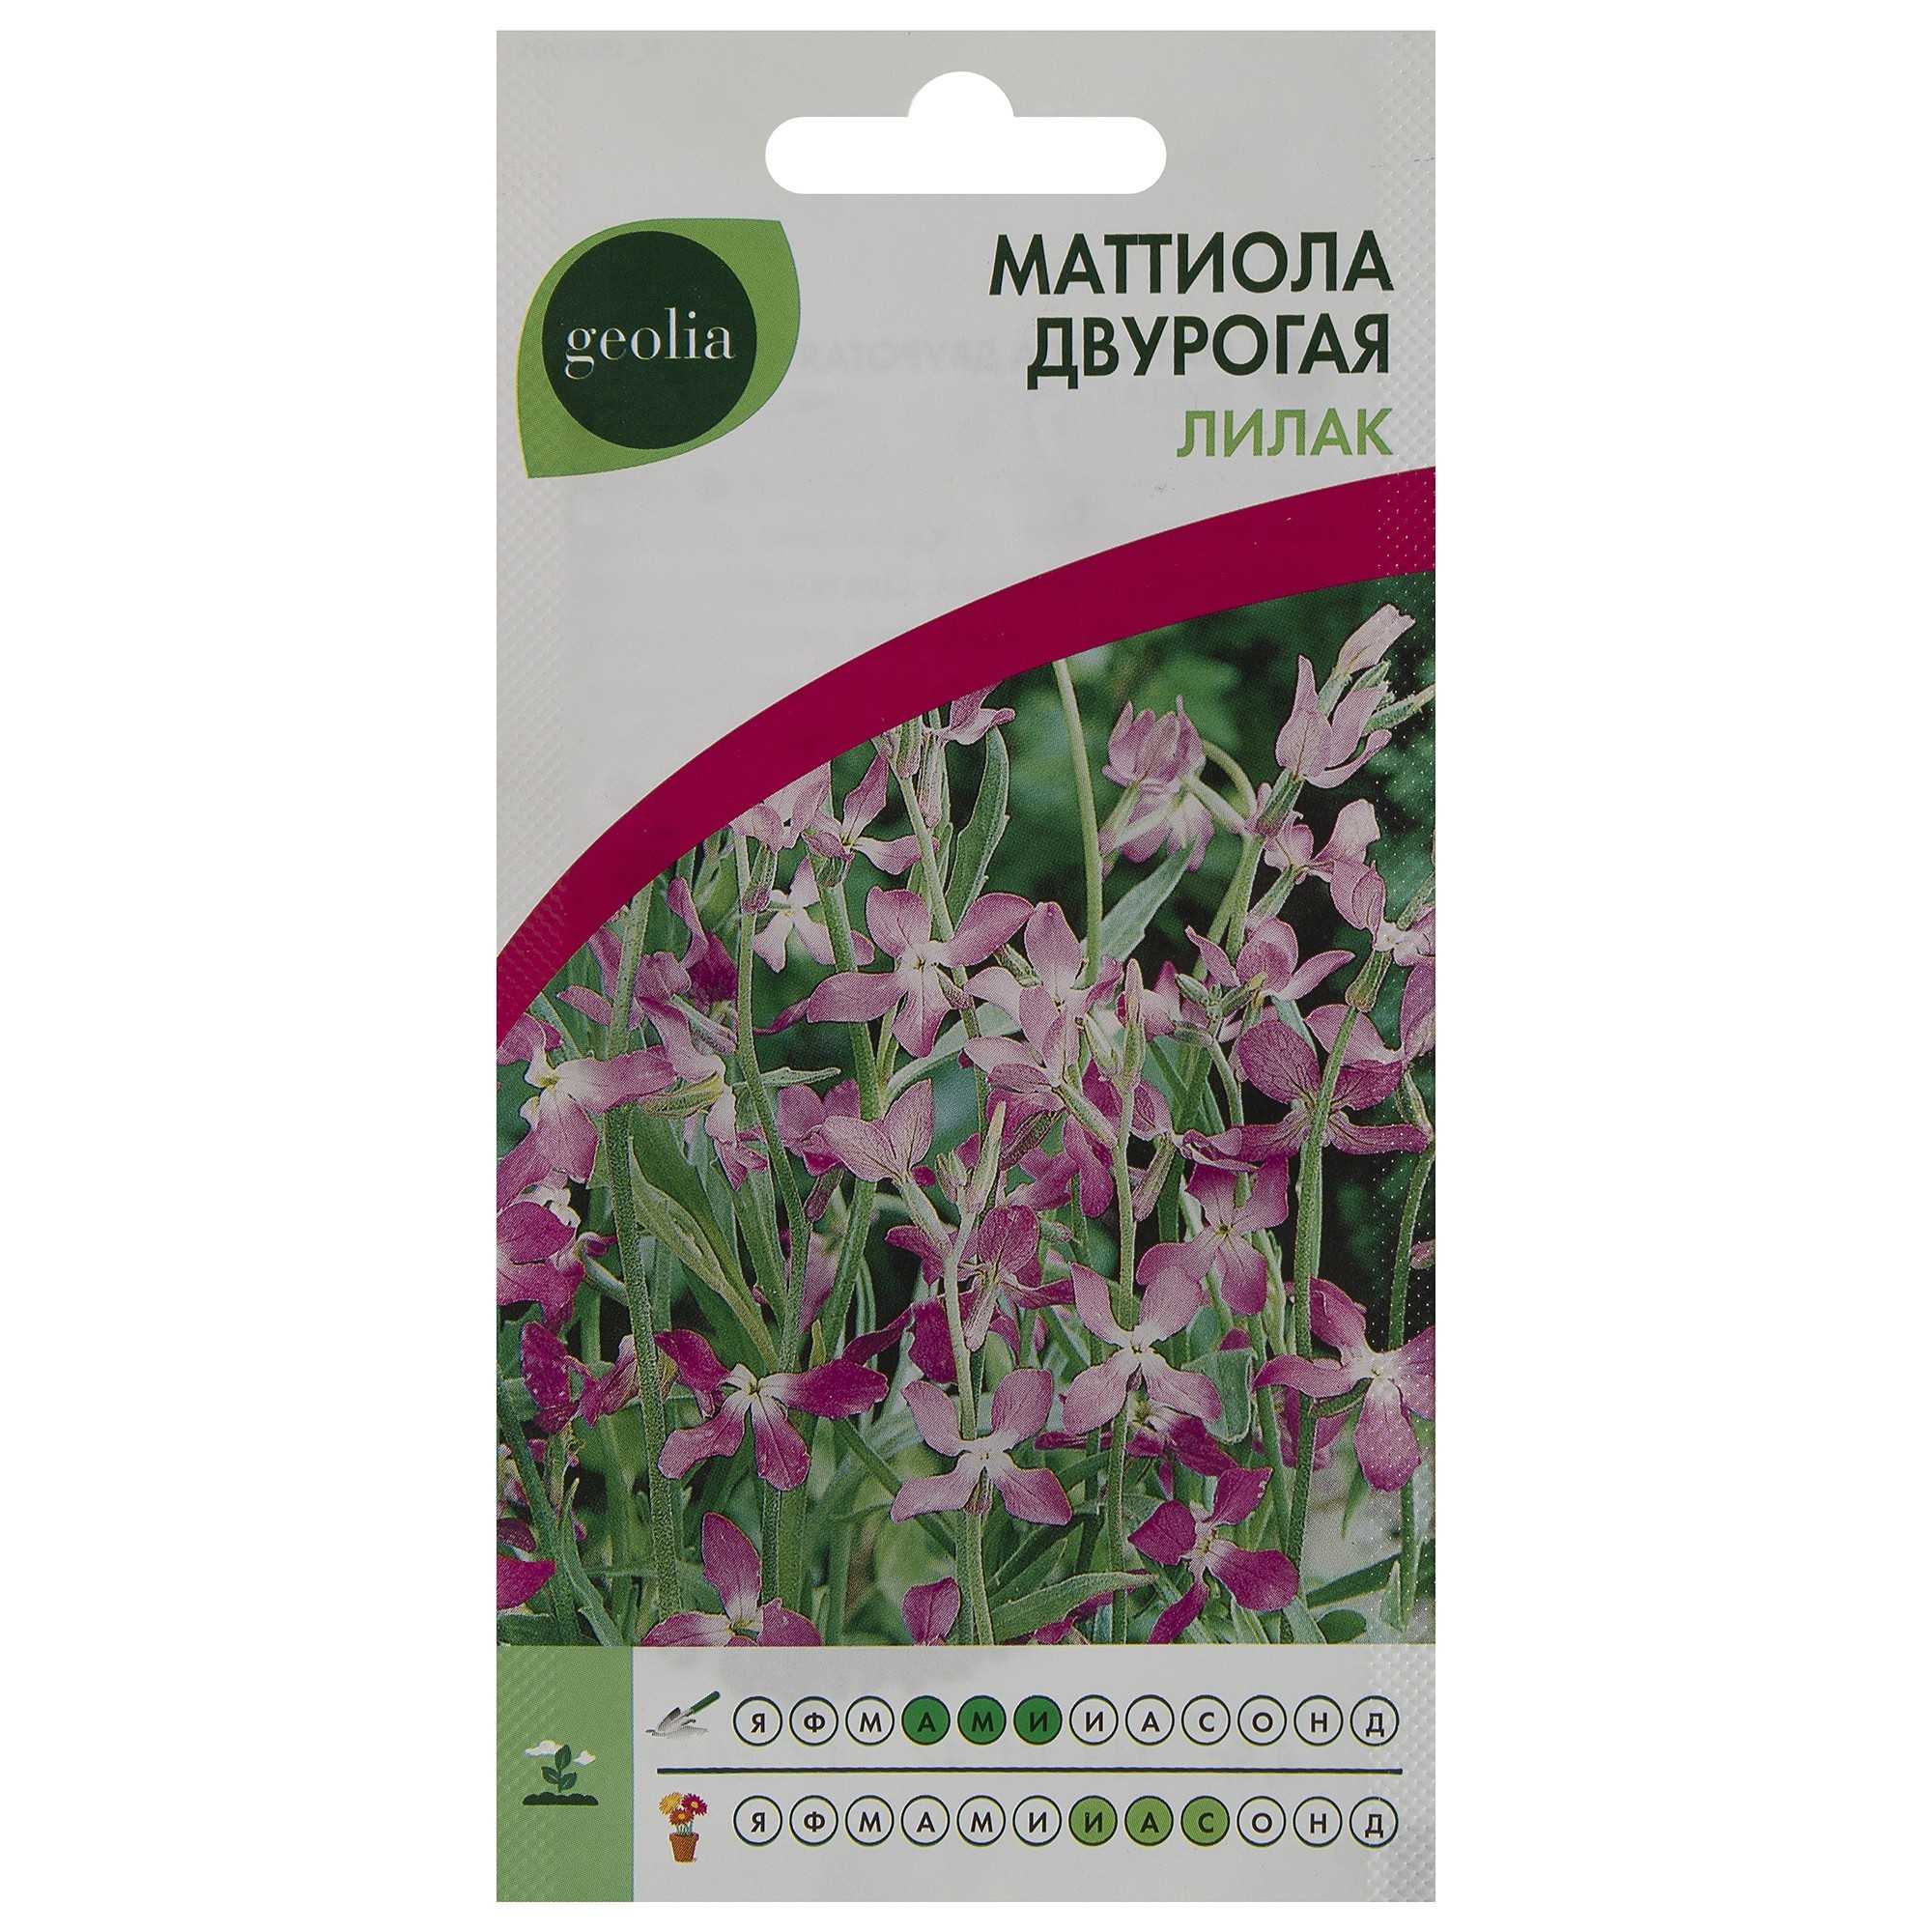 Маттиола — изящный цветок для красивого оформления ландшафта (128 фото)